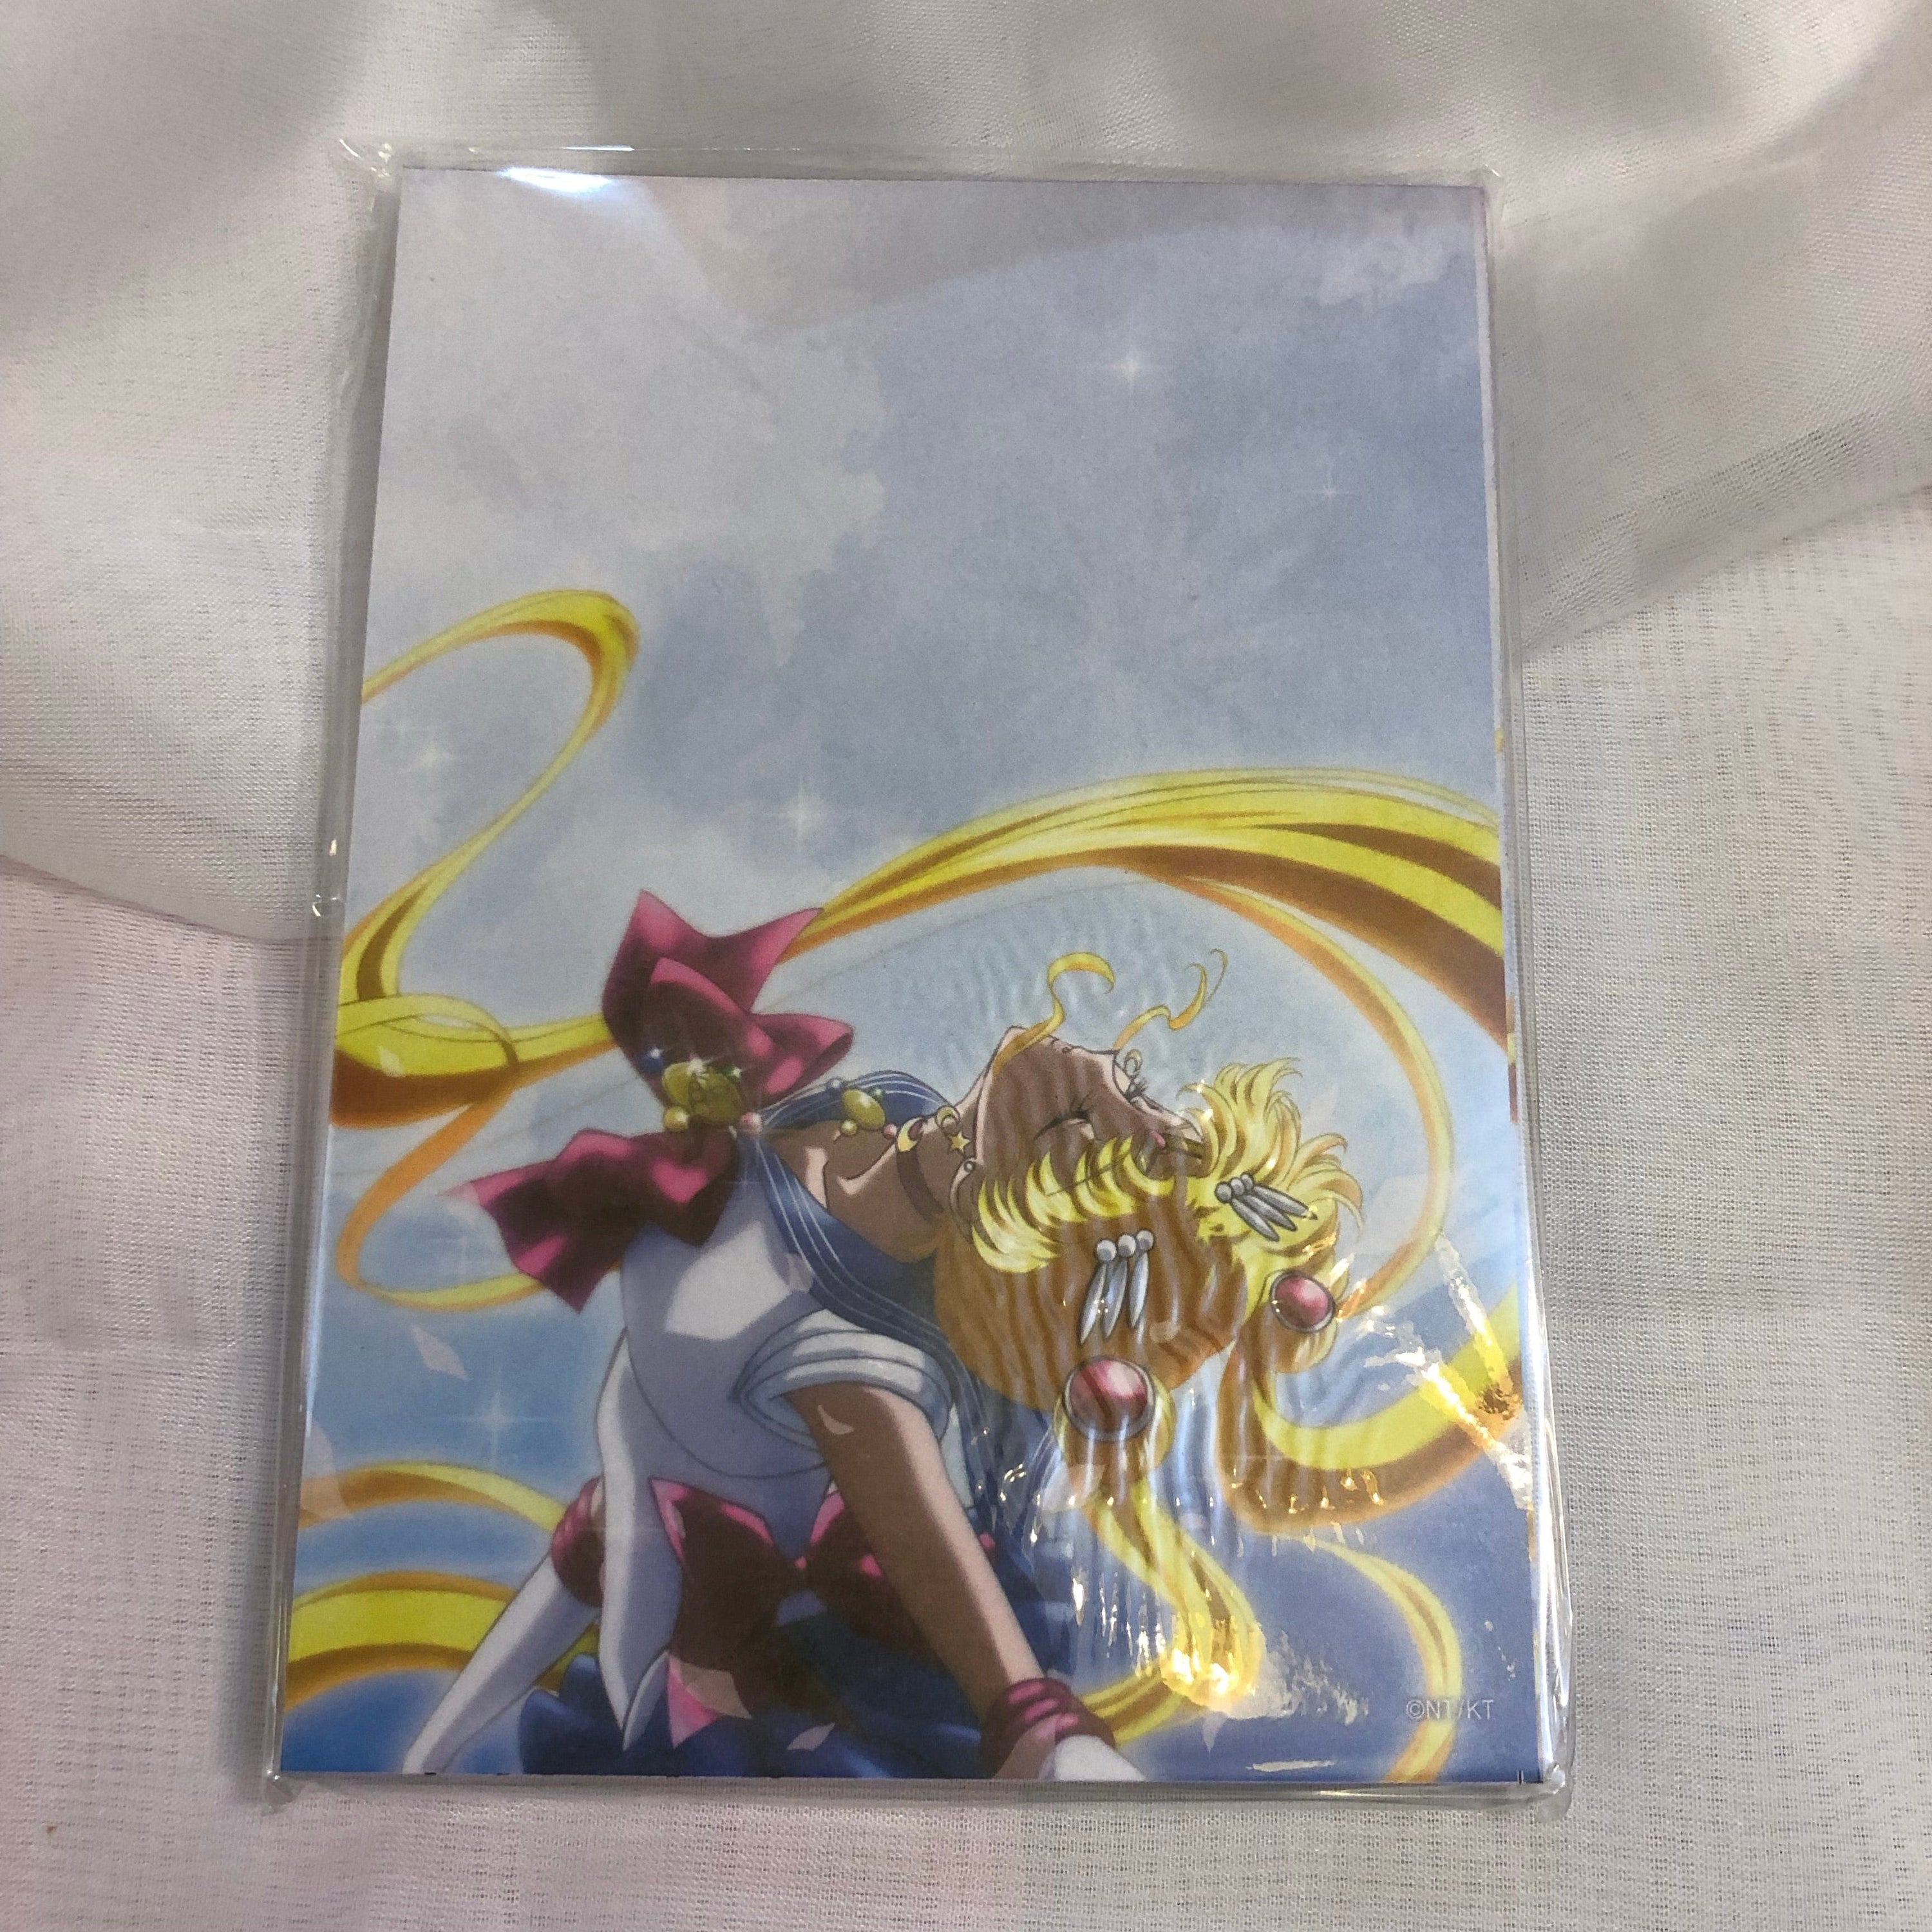 BeeCrazee SAILOR MOON Crystal MEMO PAD Sailor Moon Transformation Kawaii Gifts 74986165